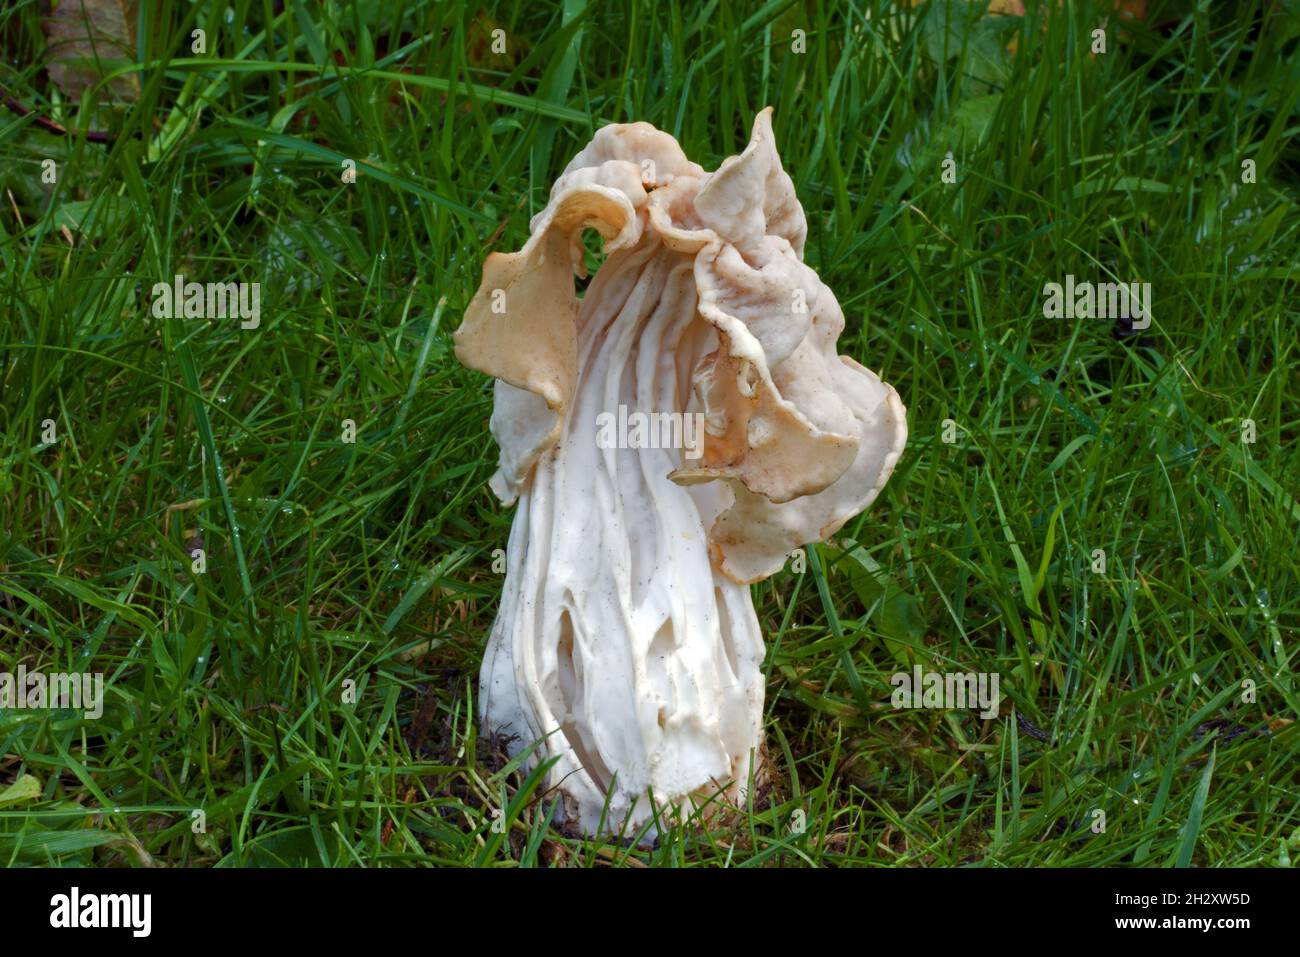 Helvella crispa (selle blanche) est un champignon ascomycète qui pousse dans les prairies ainsi que dans les forêts humides de feuillus. Banque D'Images